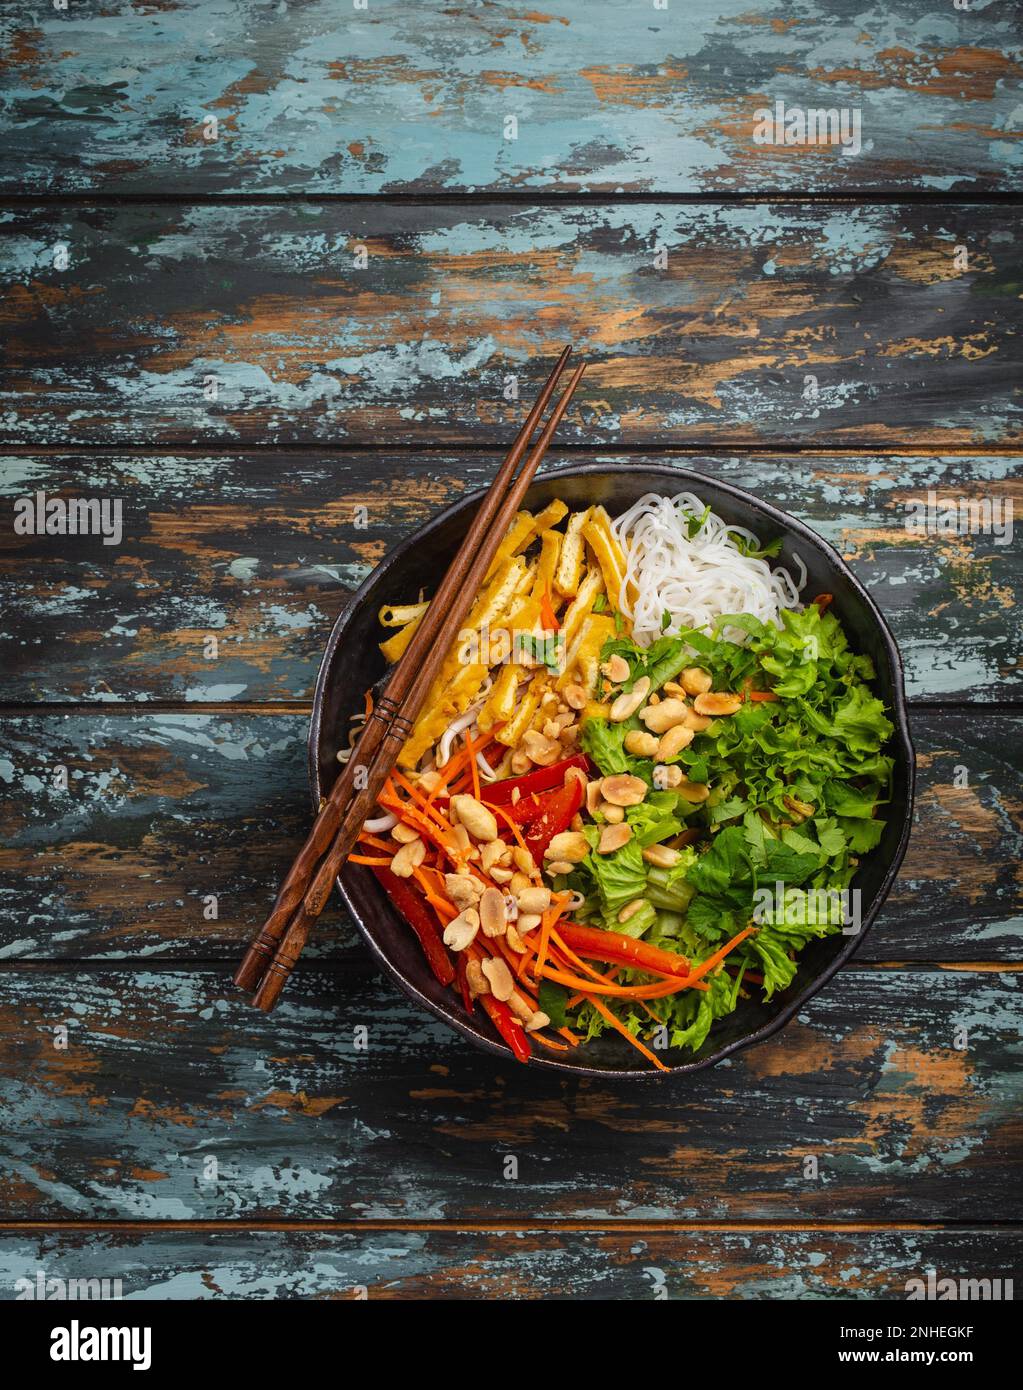 Nudelsalat im asiatischen, chinesischen oder vietnamesischen Stil mit frischem Gemüse, gebratenem Tofu und Erdnüssen, serviert in einer rustikalen Keramikschüssel auf farbenfrohem Holz Stockfoto